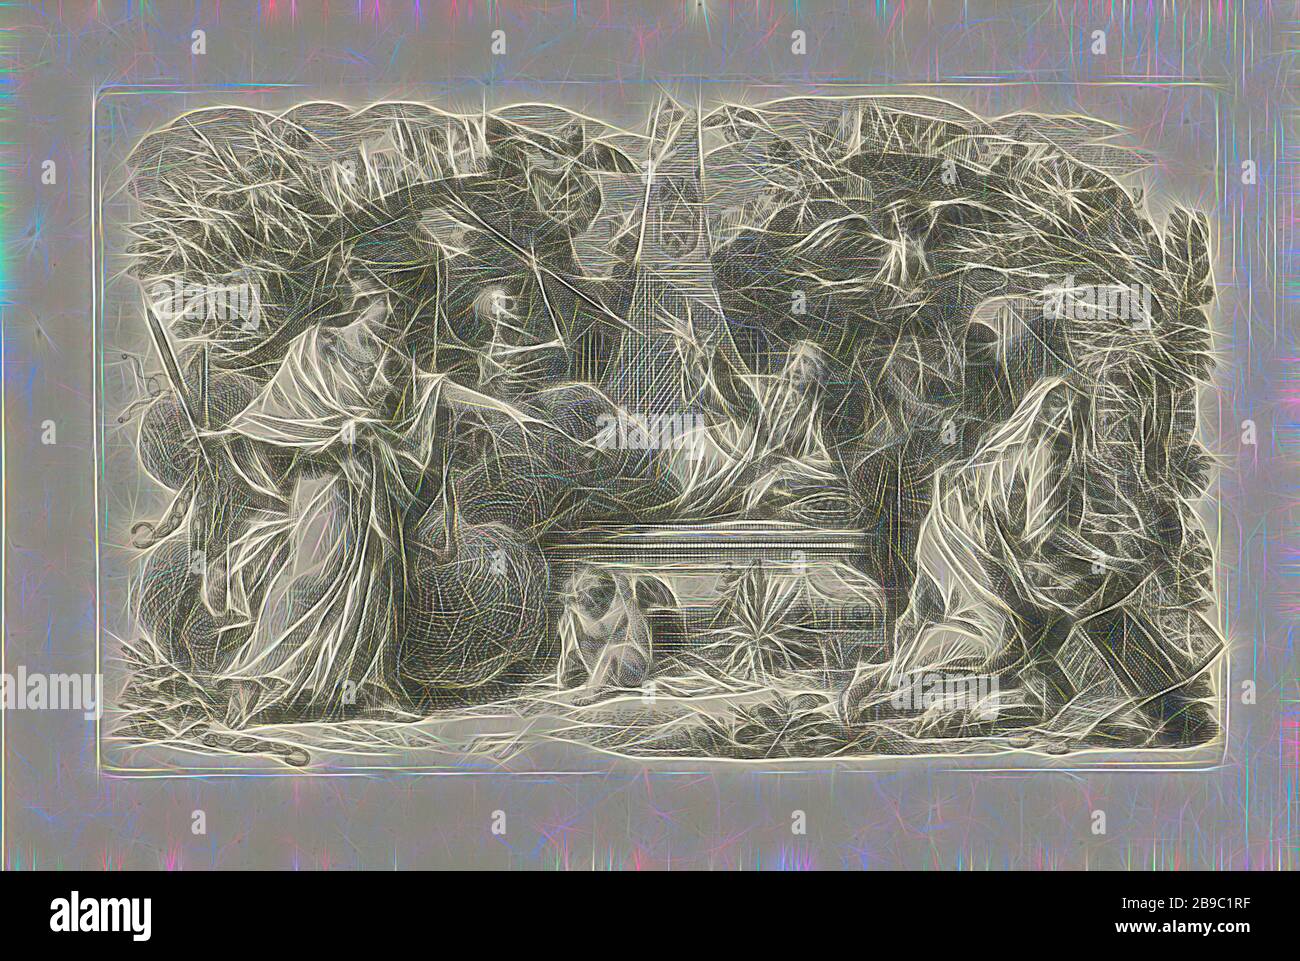 Rappresentazione allegorica con tomba, rappresentazione allegorica con varie personificazioni intorno ad una tomba. Uno scheletro cerca di colpire l'uomo che giace sulla tomba con una lancia. Le figure devilish stanno volando nel cielo. Un putto sta piangendo ai piedi della tomba, tomba, tomba, morte come scheletro, diavoli sotto forma di (favolosi) animali, Simon Fokke (citato su oggetto), Amsterdam, 1722 - 1784, carta, incisione, h 96 mm × w 157 mm, Reimagined by Gibon, design di calore allegro di luminosità e raggi di luce radianza. Arte classica reinventata con un tocco moderno. Fotografia ispirata al futurismo, em Foto Stock